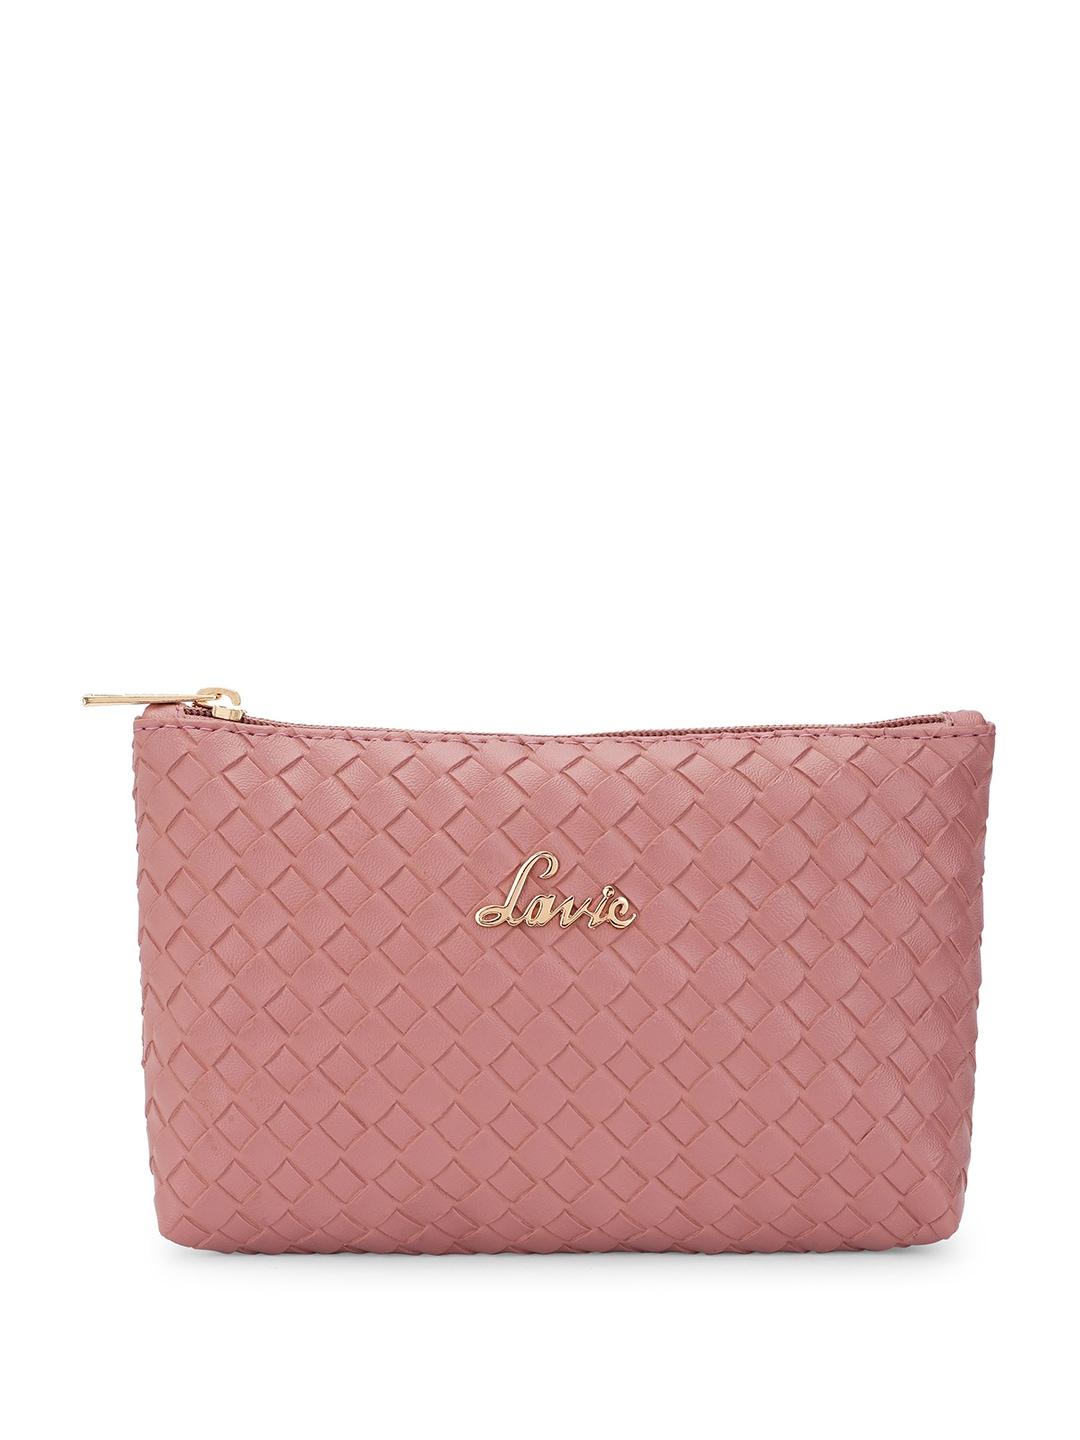 lavie-women-textured-purse-clutch